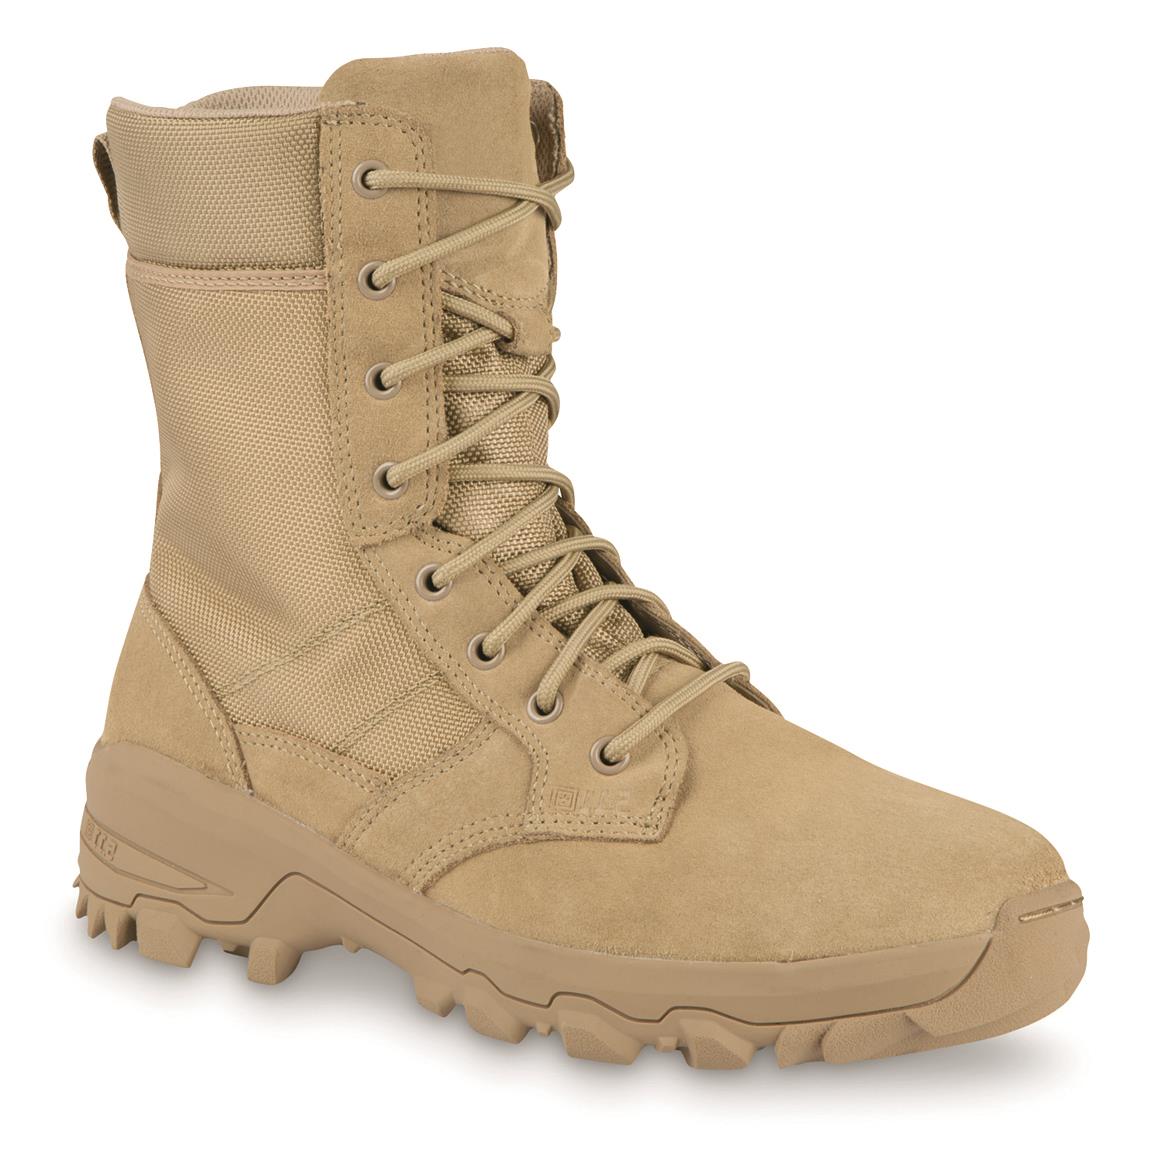 5.11 Men's Speed 3.0 Side Zip Tactical Boots, Coyote